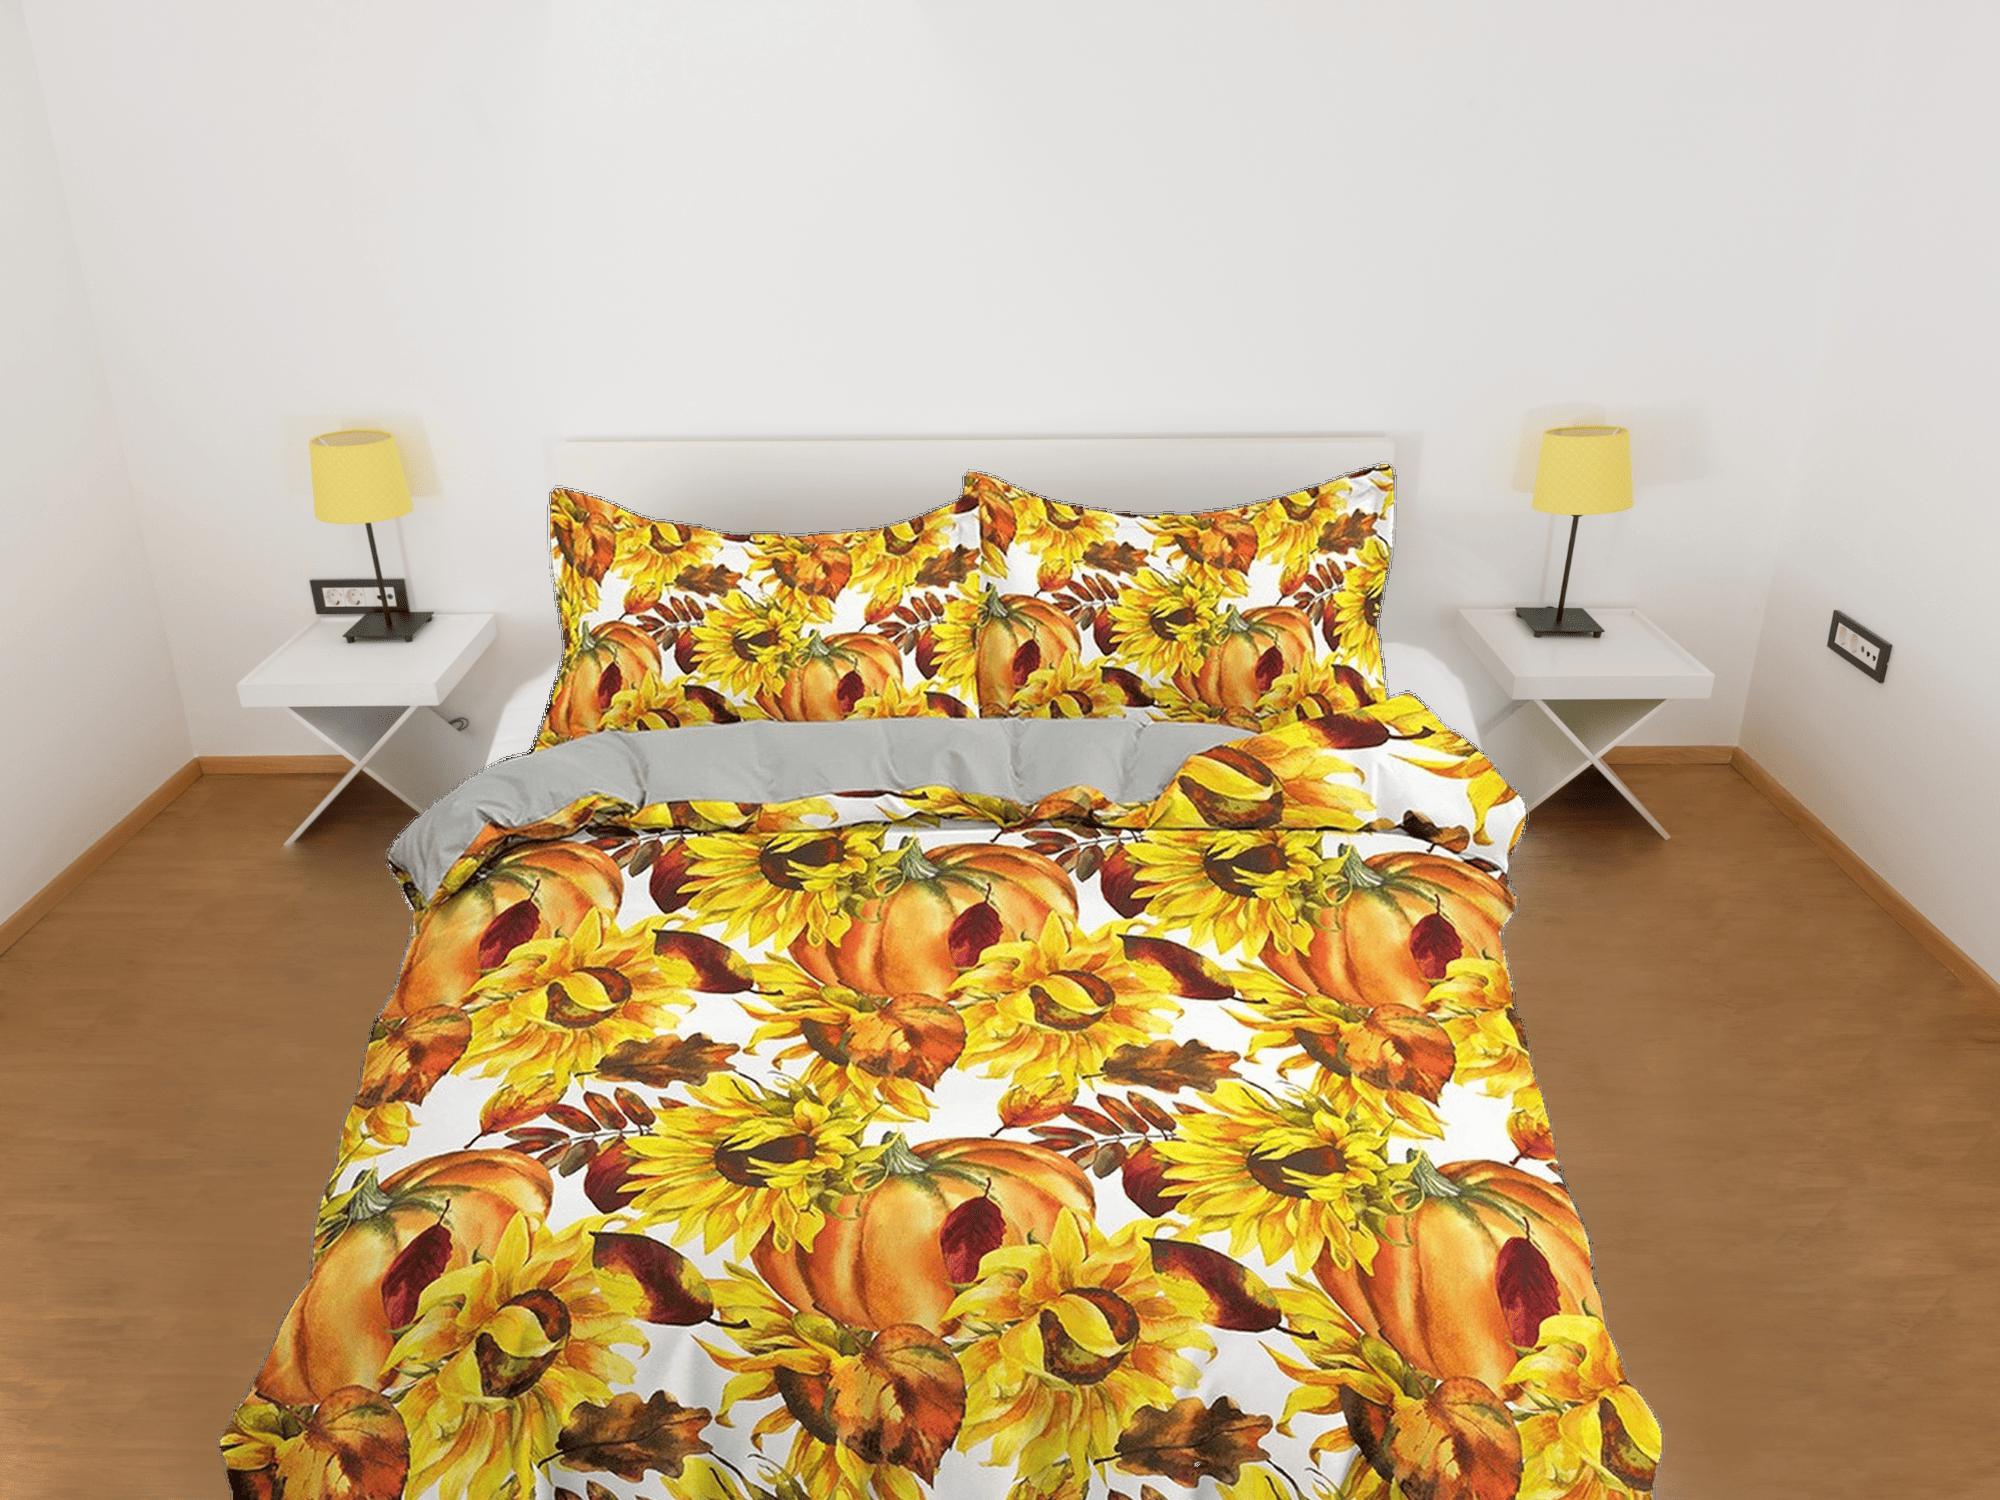 daintyduvet Sunflower and pumpkin bedding & pillowcase, yellow duvet cover set dorm bedding, halloween decor, nursery toddler bedding, halloween gift